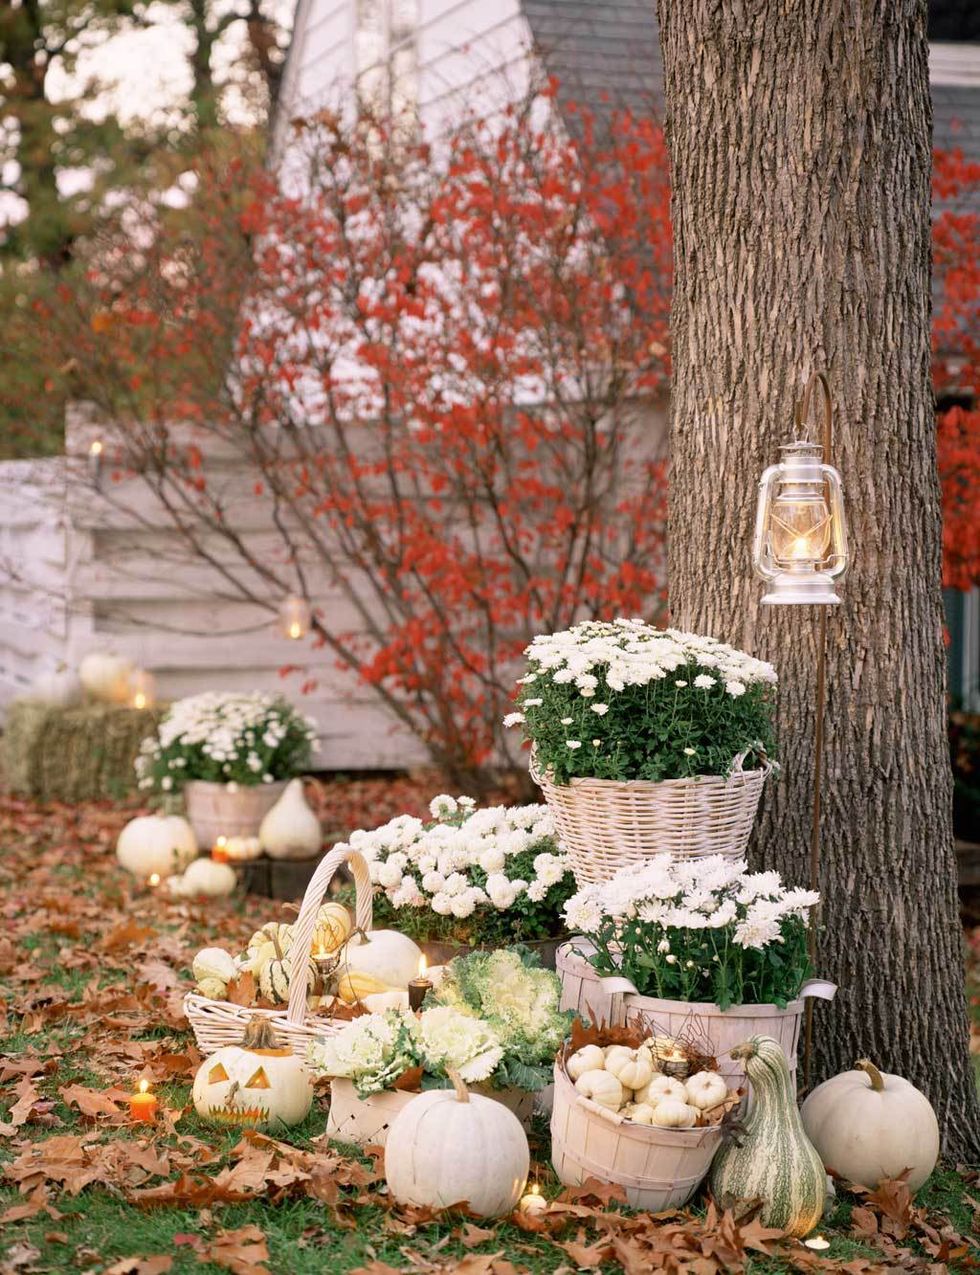 <p>Coloca junto a un árbol varios cestos con flores, coles y pequeñas calabazas blancas. Sobre el suelo puedes colocar algunas de mayor tamaño, con la cara de Jack esculpida. Para iluminar, pon velas y faroles colgados. ¡Qué romántico!</p>